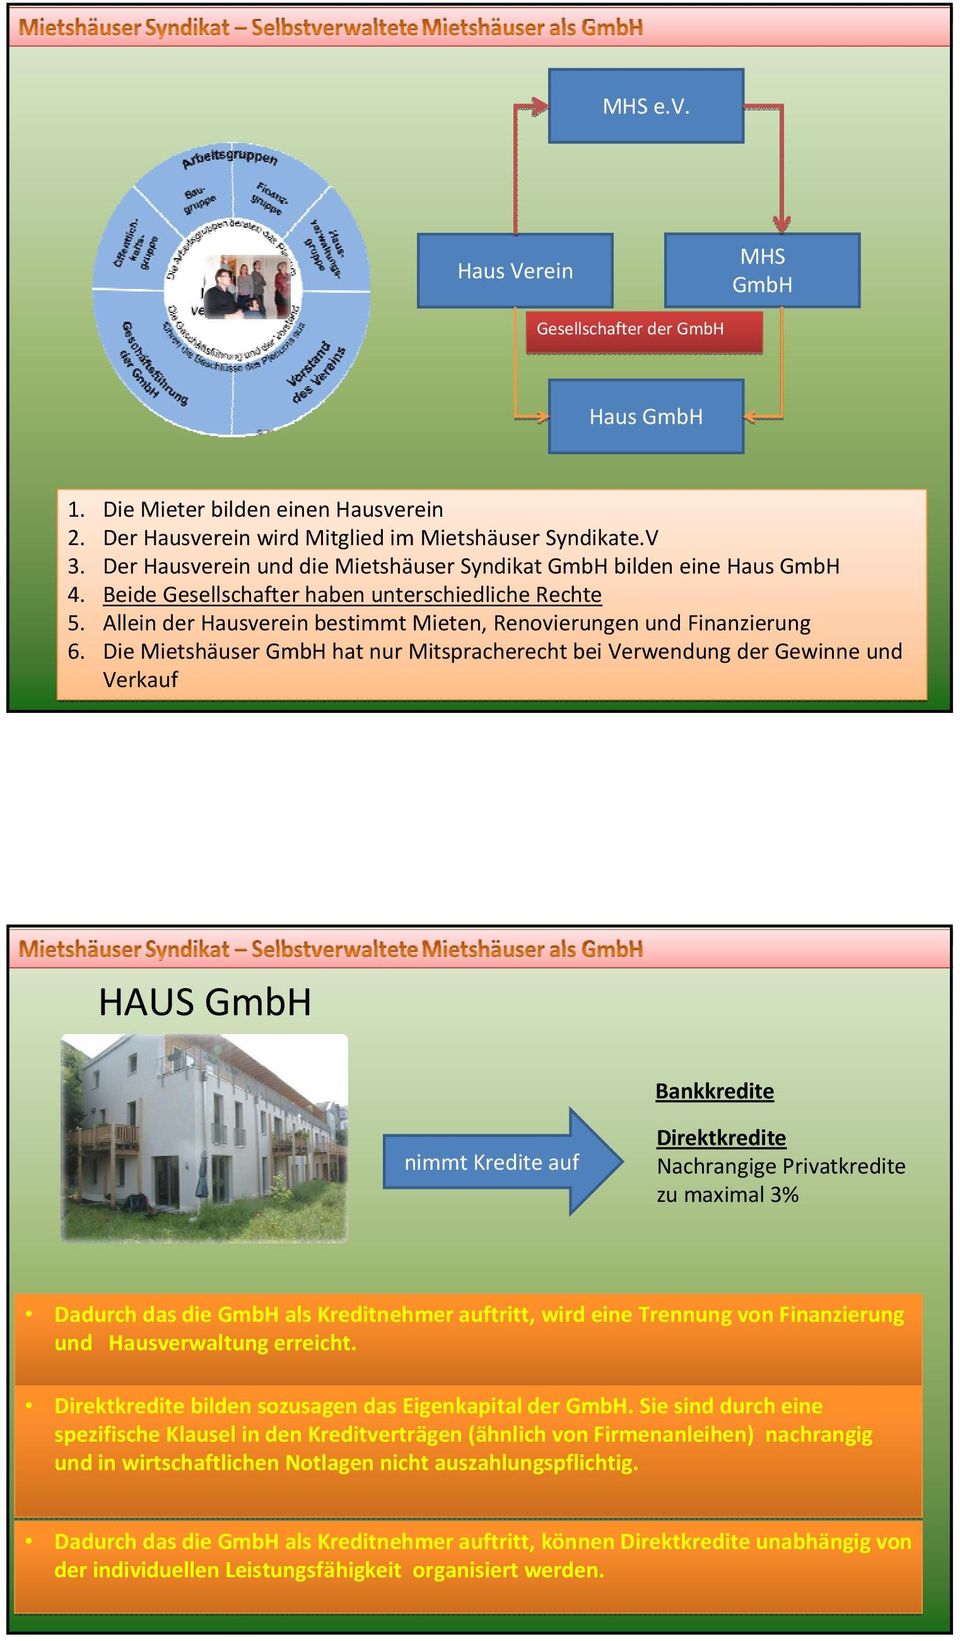 Die Mietshäuser GmbH hat nur Mitspracherecht bei Verwendung der Gewinne und Verkauf HAUS GmbH Bankkredite nimmt Kredite auf Direktkredite Nachrangige Privatkredite zu maximal 3% Dadurch das die GmbH